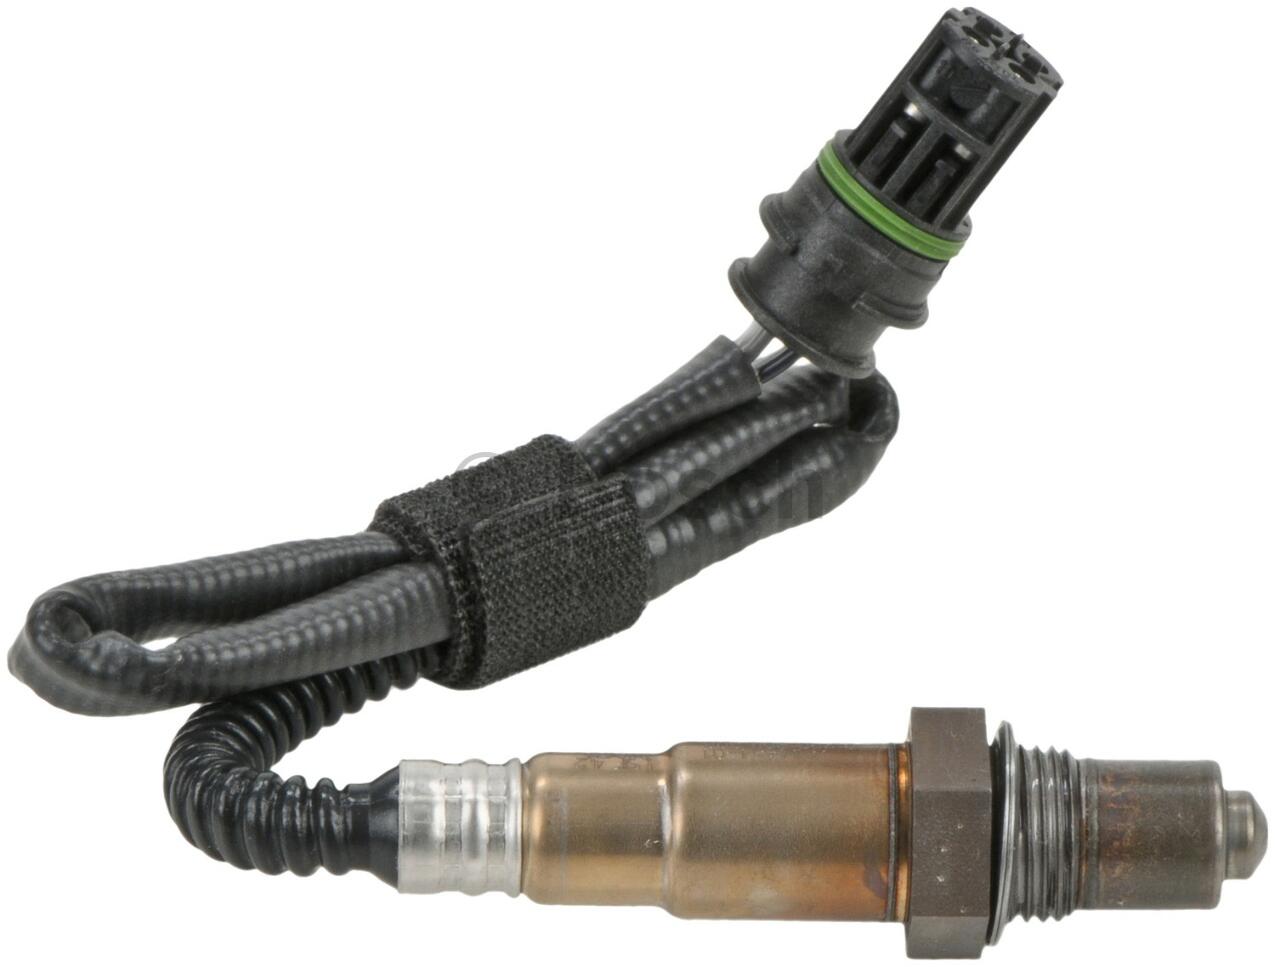 BMW Oxygen Sensor - Rear (Cyl 1-3) 11787544654 - Bosch 16808